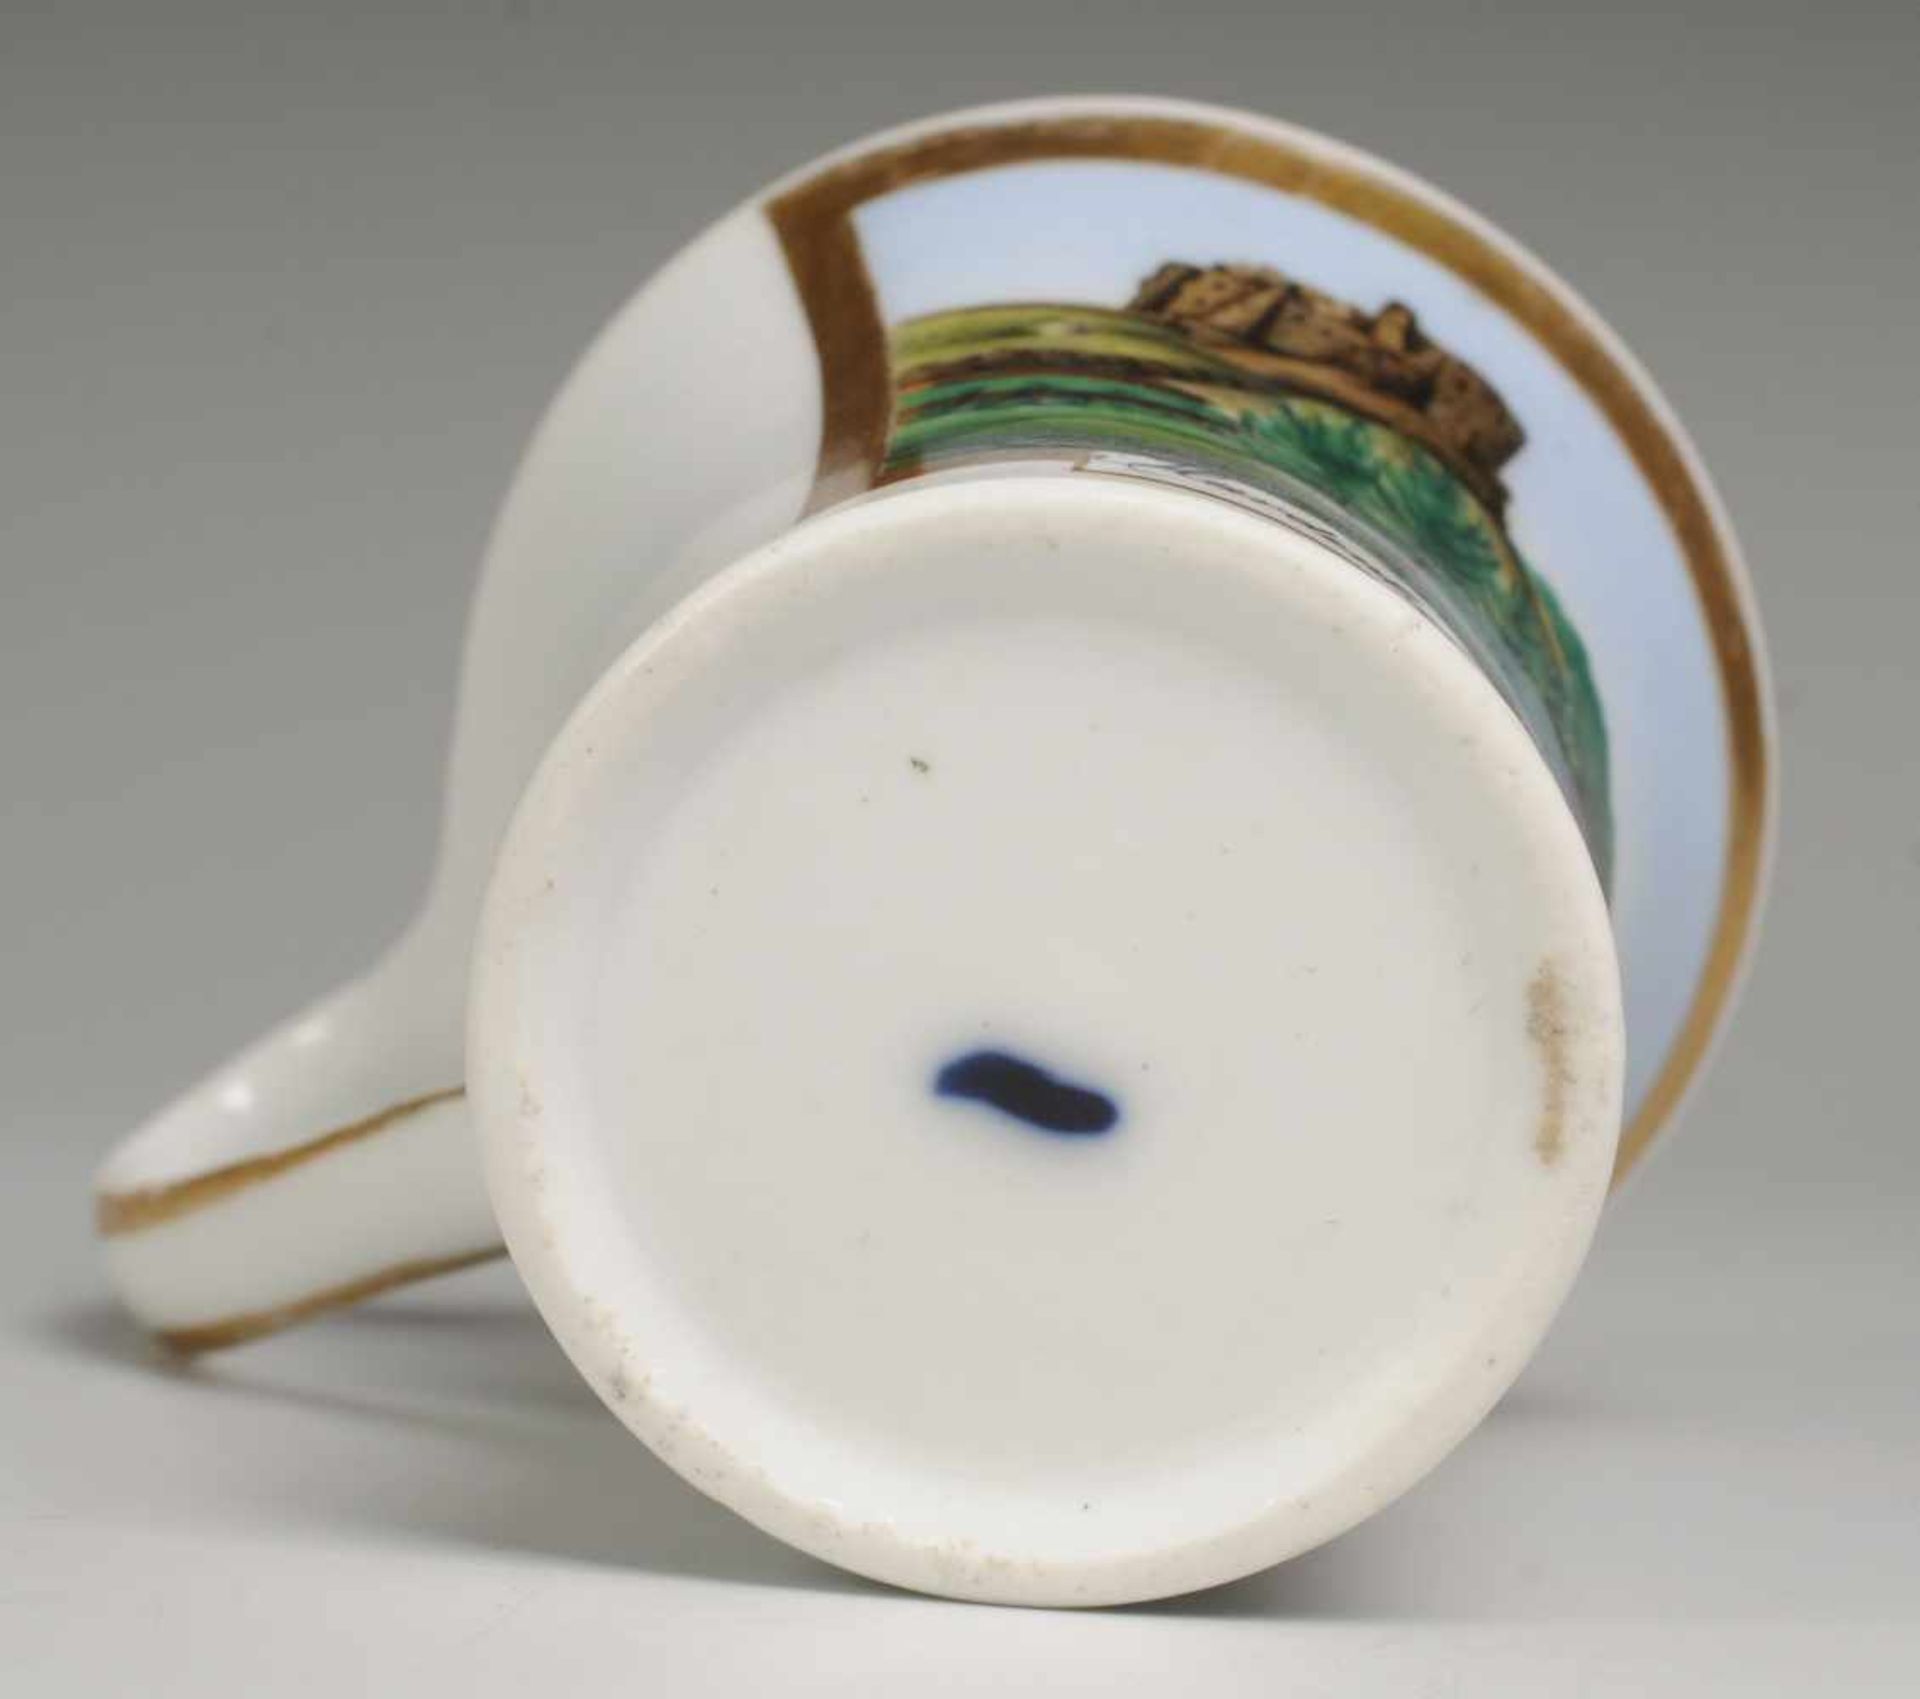 Biedermeier-Tasse mit UT Weiß, glasiert. Tasse in Kalathos-Form mit ausgezogenem Campanerhenkel. - Bild 2 aus 2